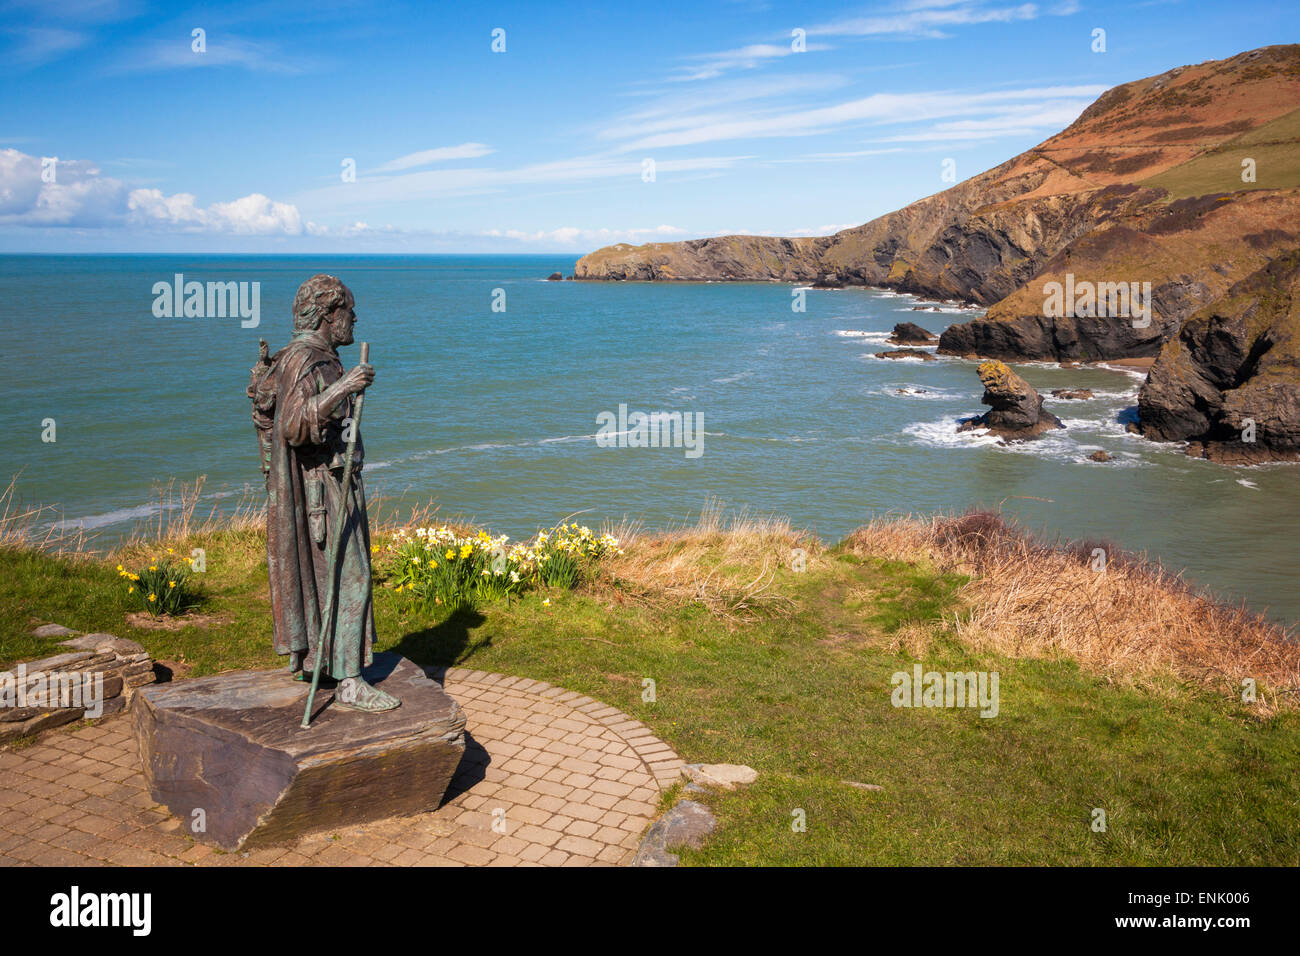 Statue de Saint Carannog, plage de Llangrannog, Ceredigion (Cardigan), l'ouest du pays de Galles, Pays de Galles, Royaume-Uni, Europe Banque D'Images